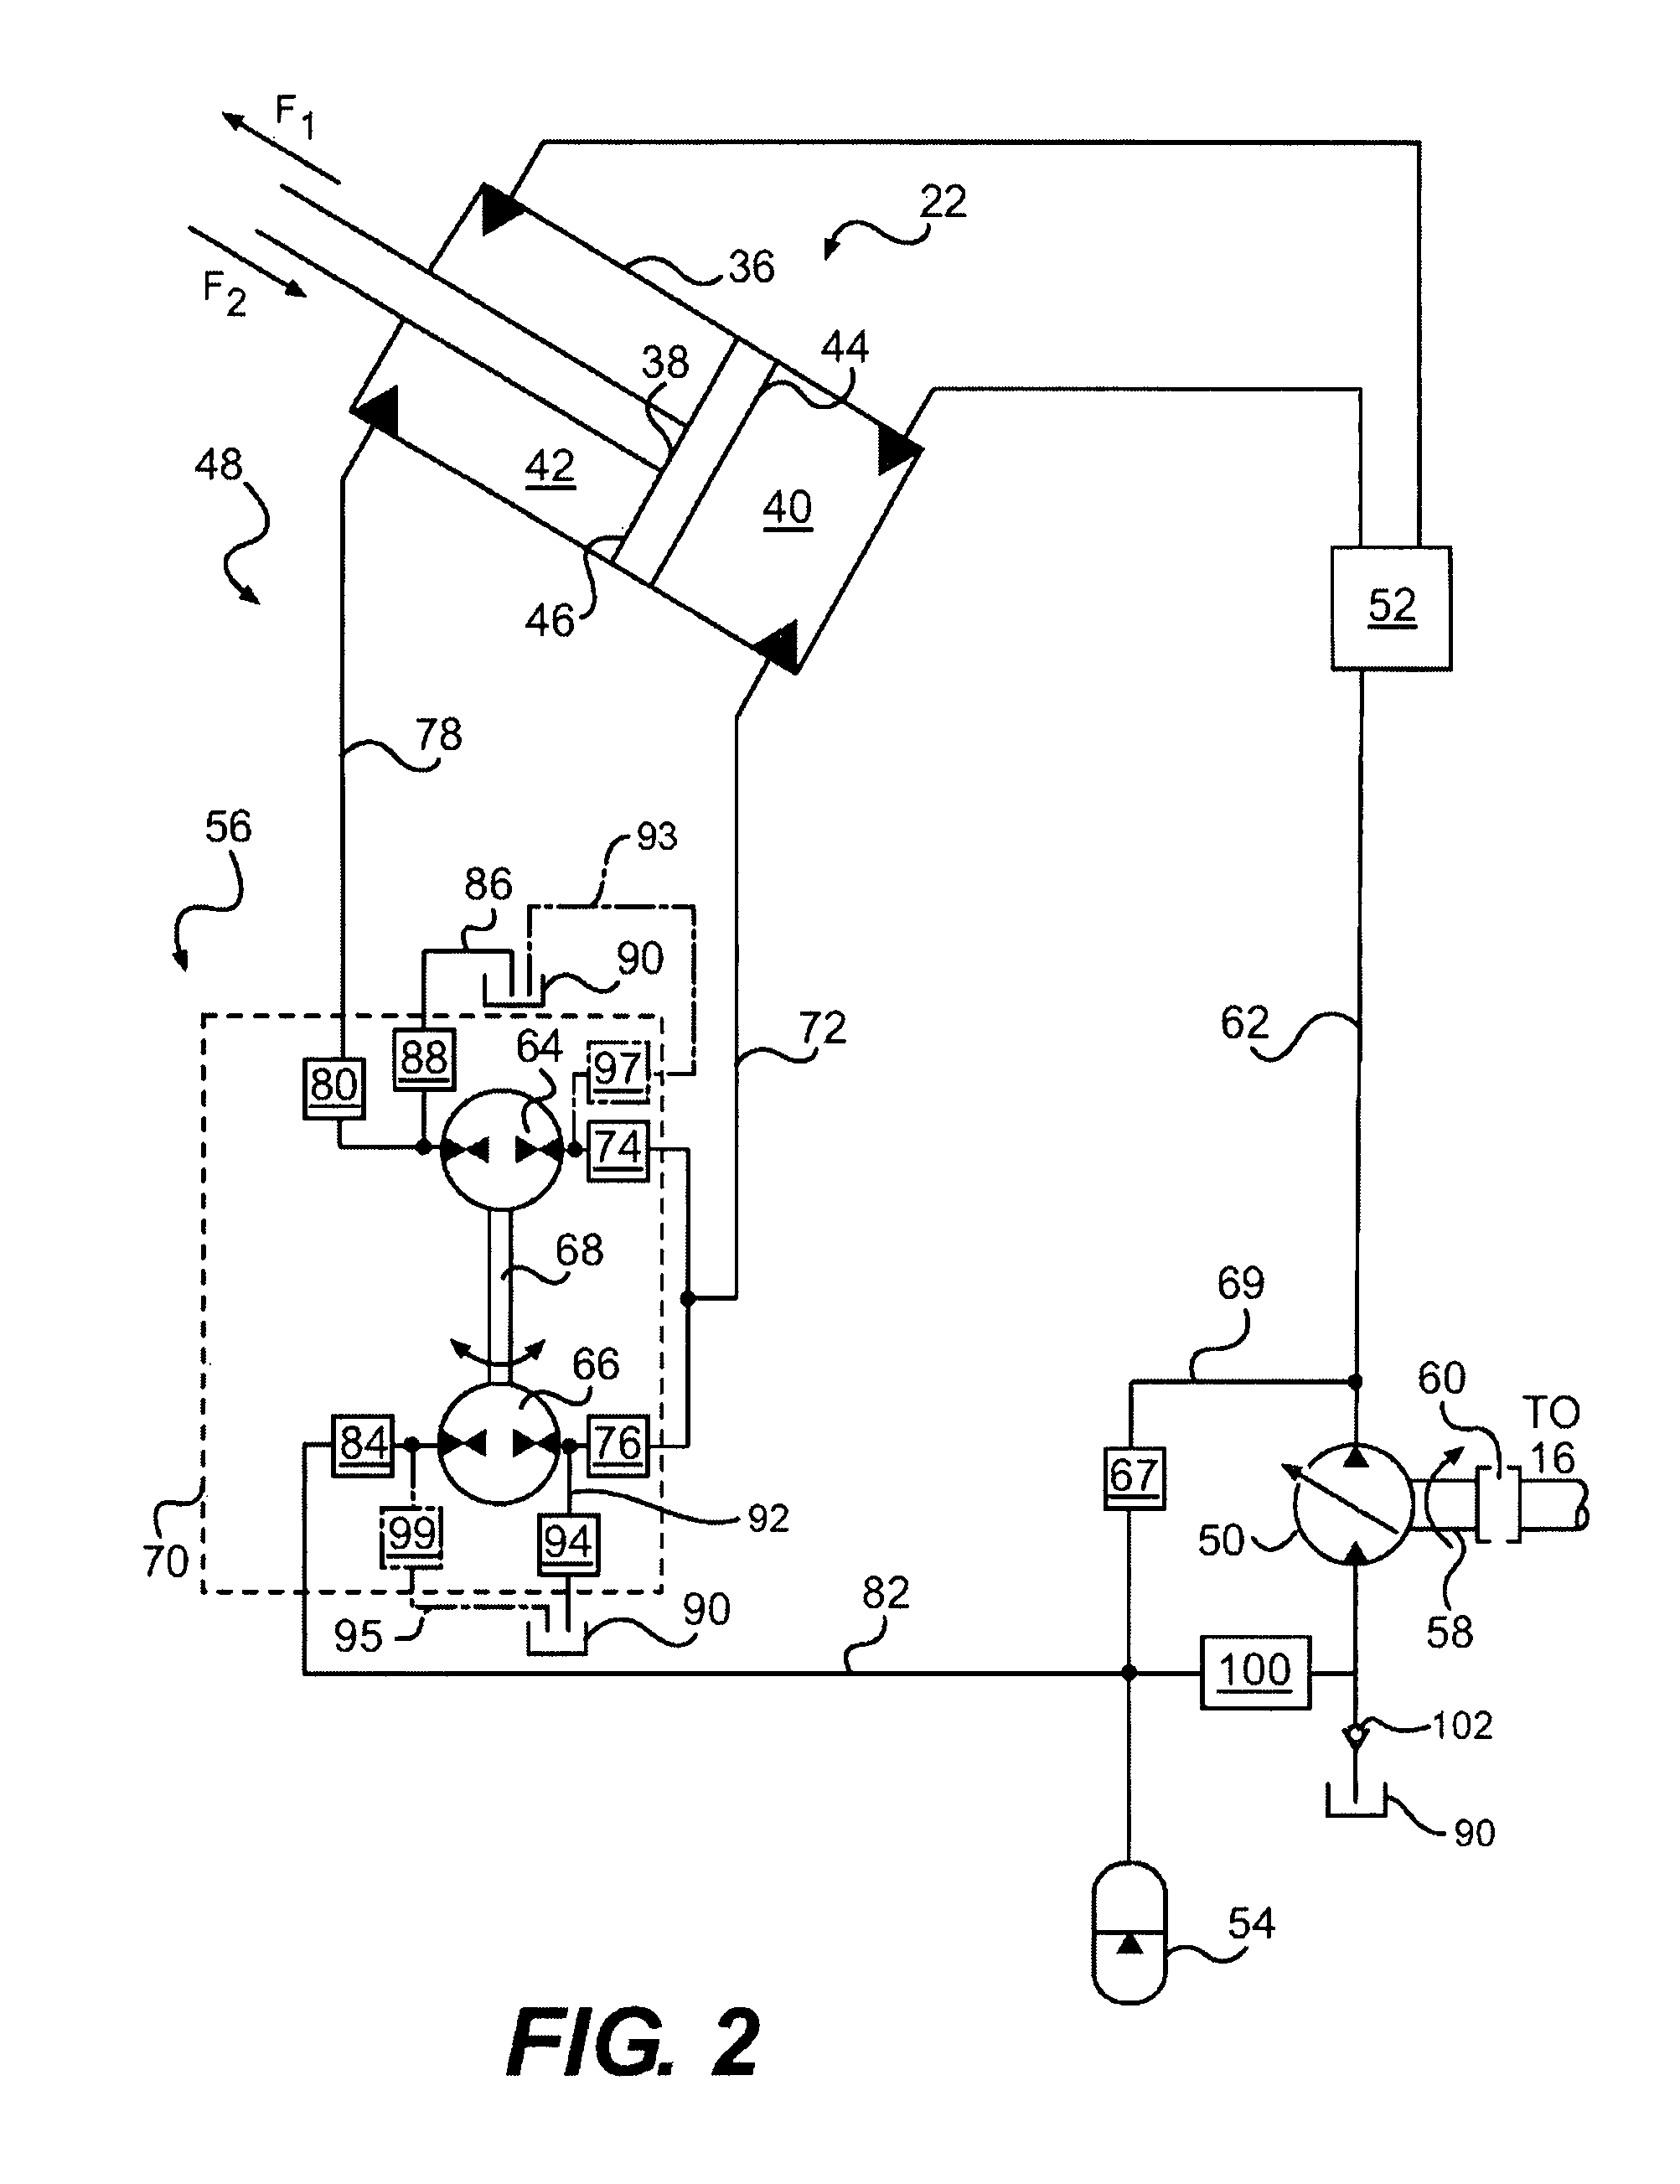 Bidirectional hydraulic transformer